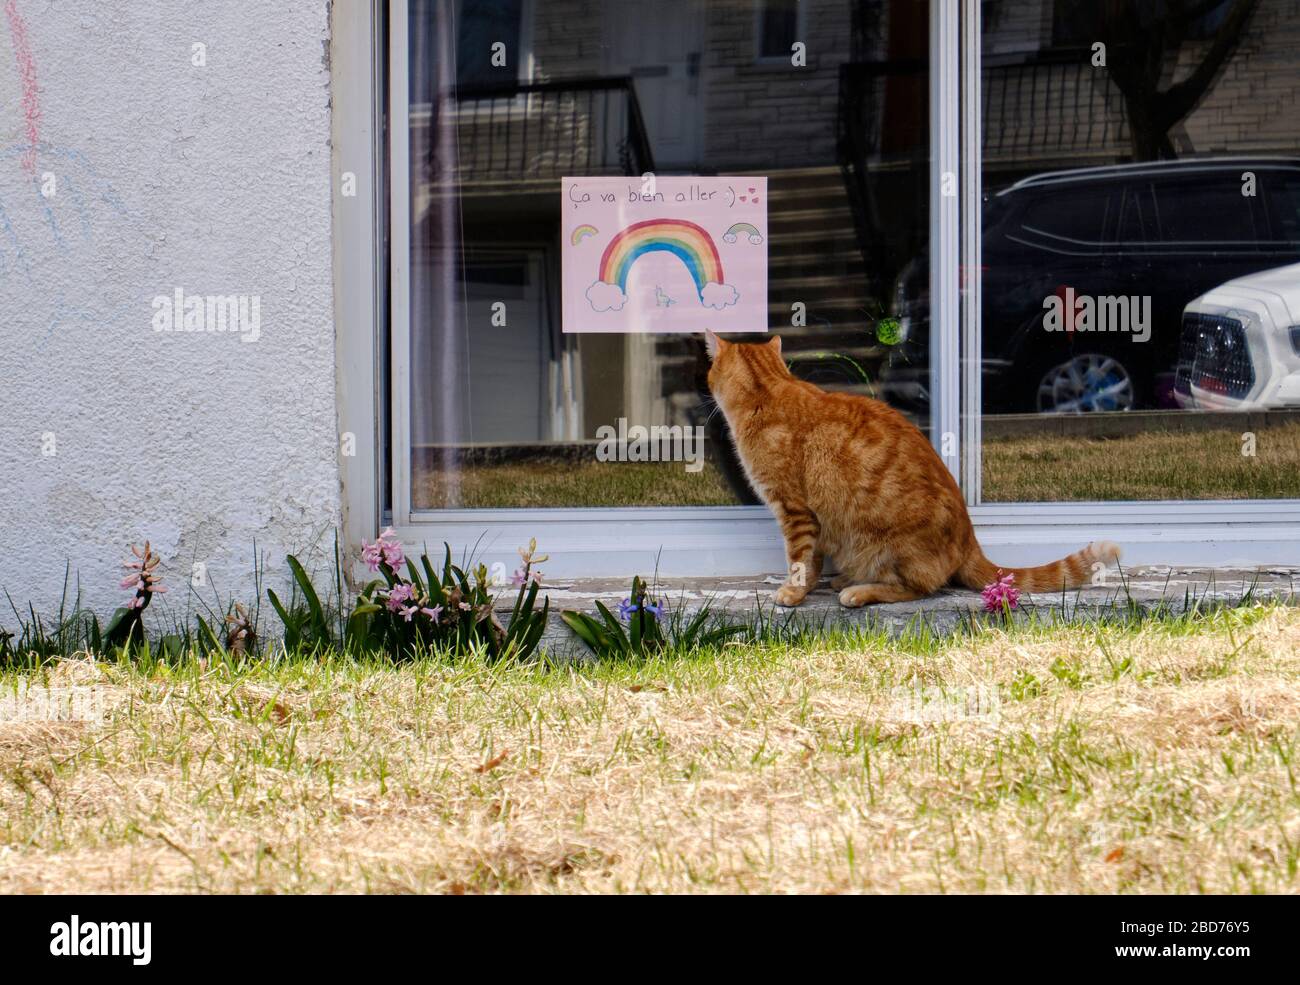 Gato mirando la ventana de la casa con dibujos de arco iris y el eslogan 'ca va bien Aller' como mensaje de esperanza parte del movimiento durante CoVID19 Foto de stock